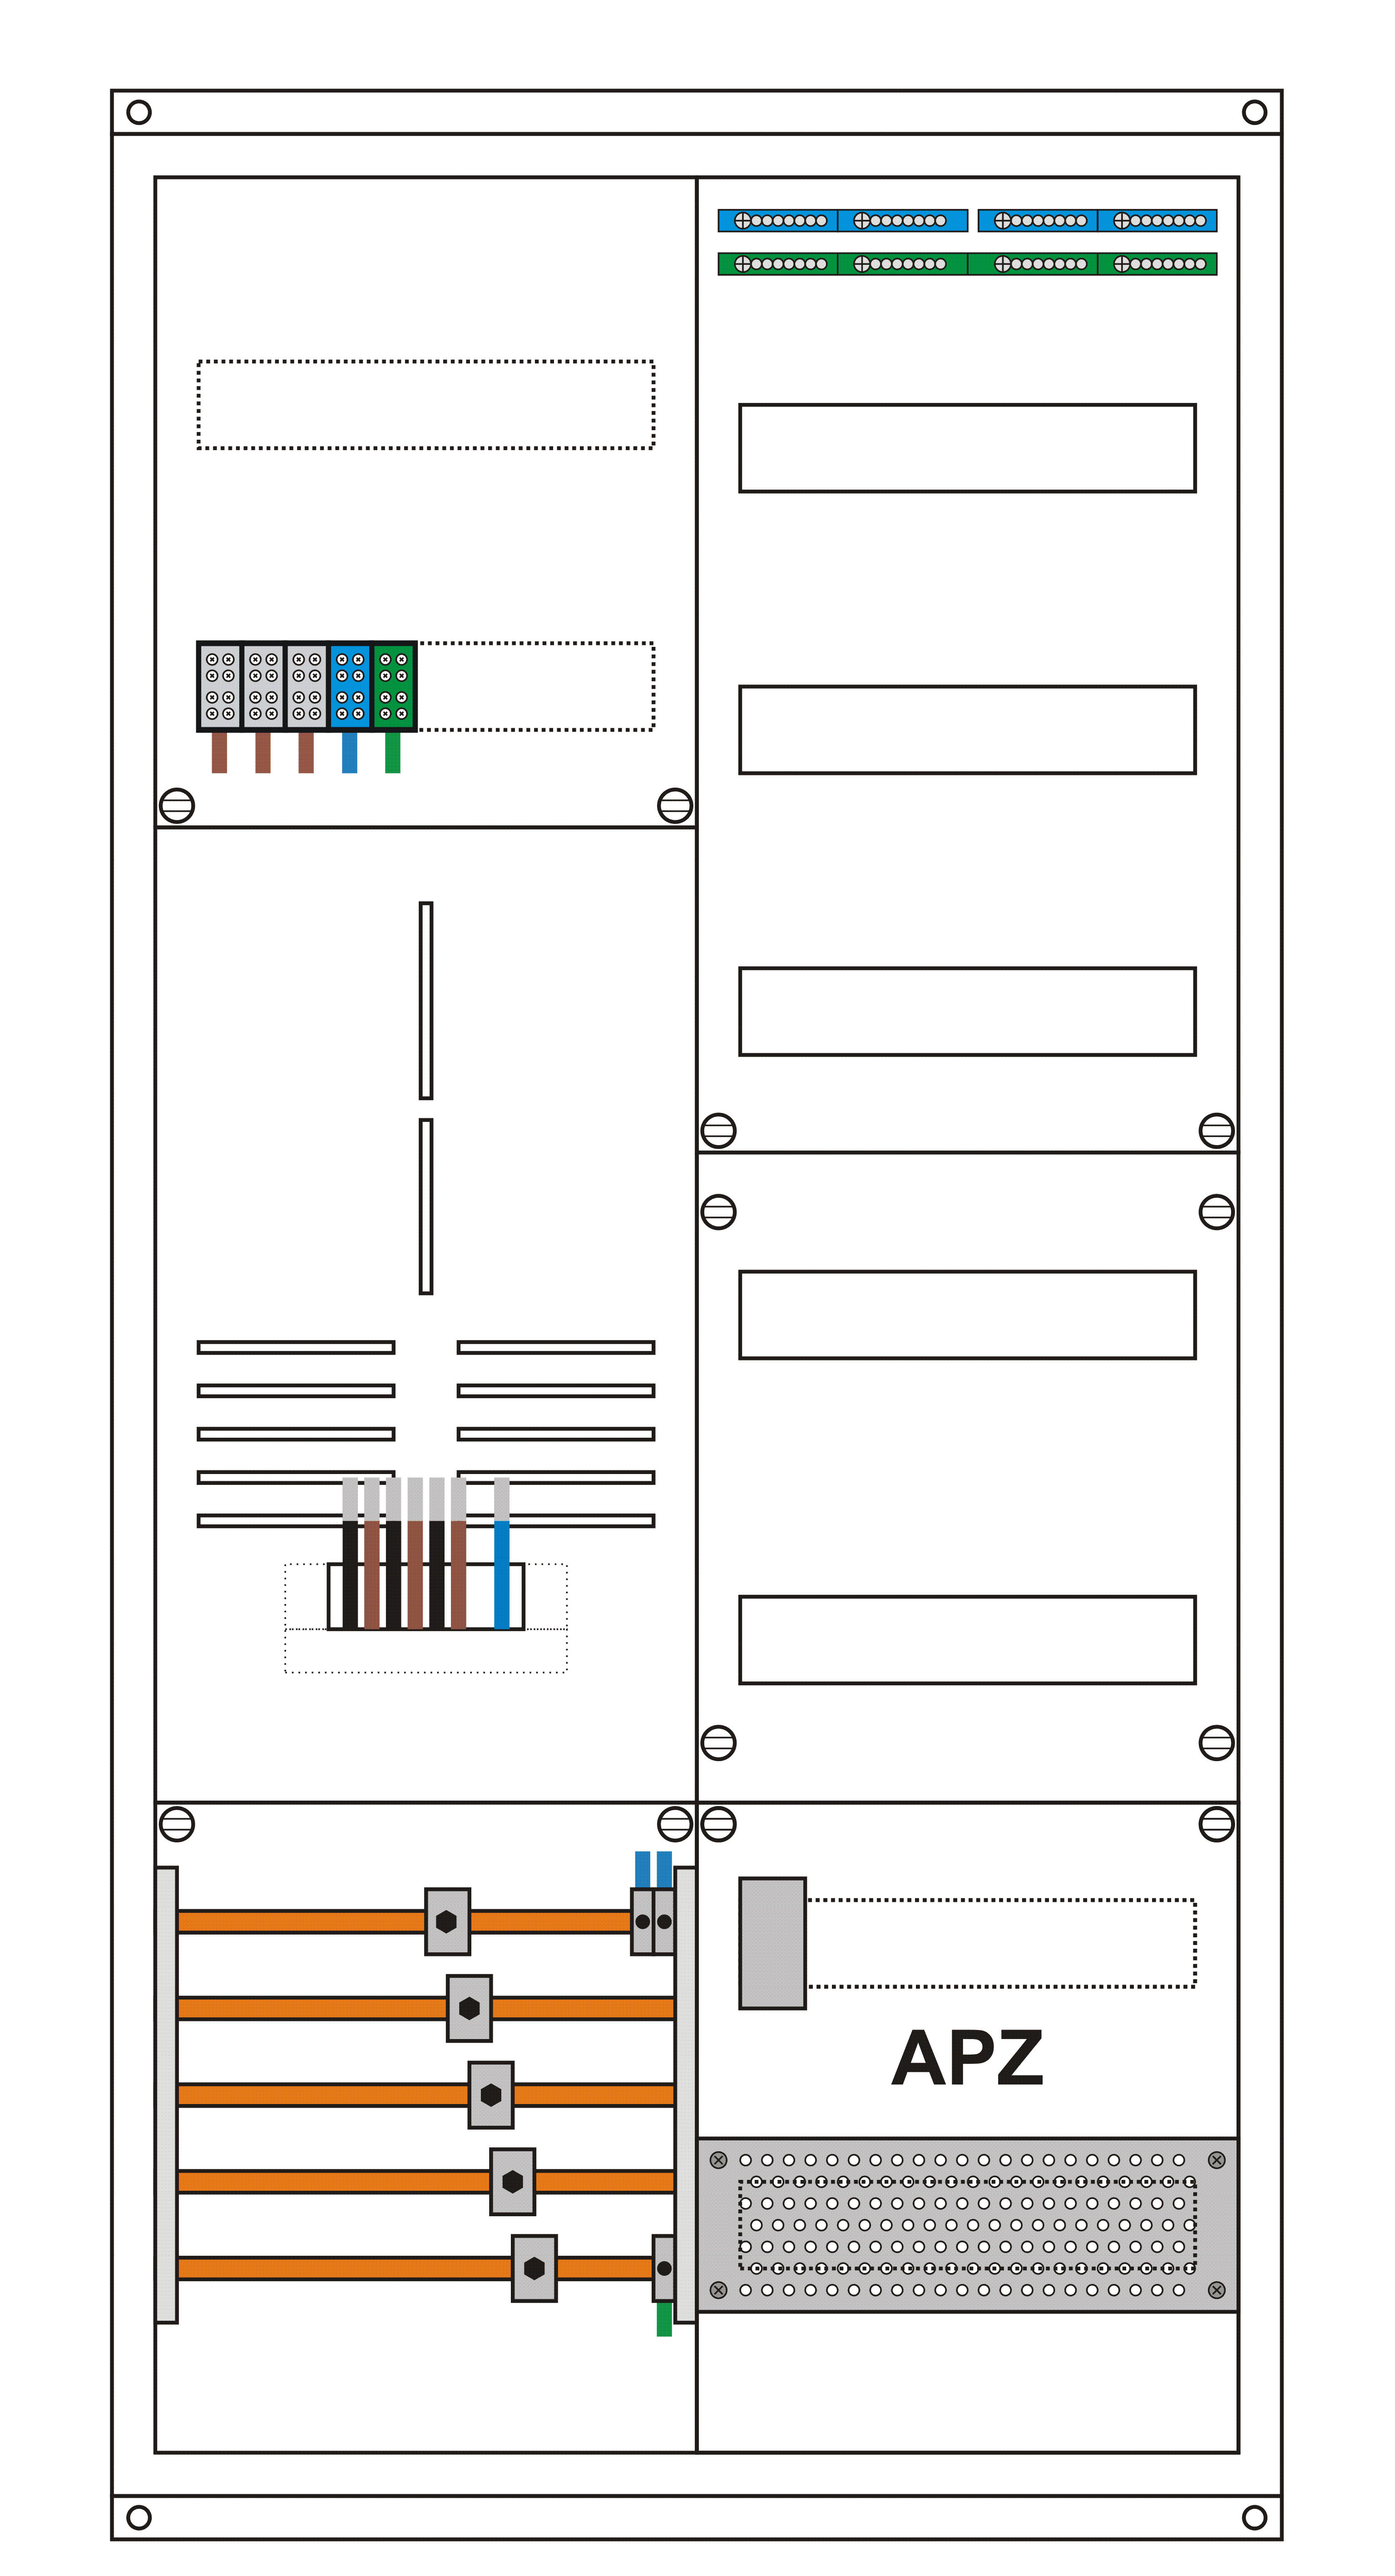 Zählerschrank eHZ 1 Zählerplatz, 1 Leerplatz, 1 Verteiler, komplett bestückt mit ABB Modularkomponenten